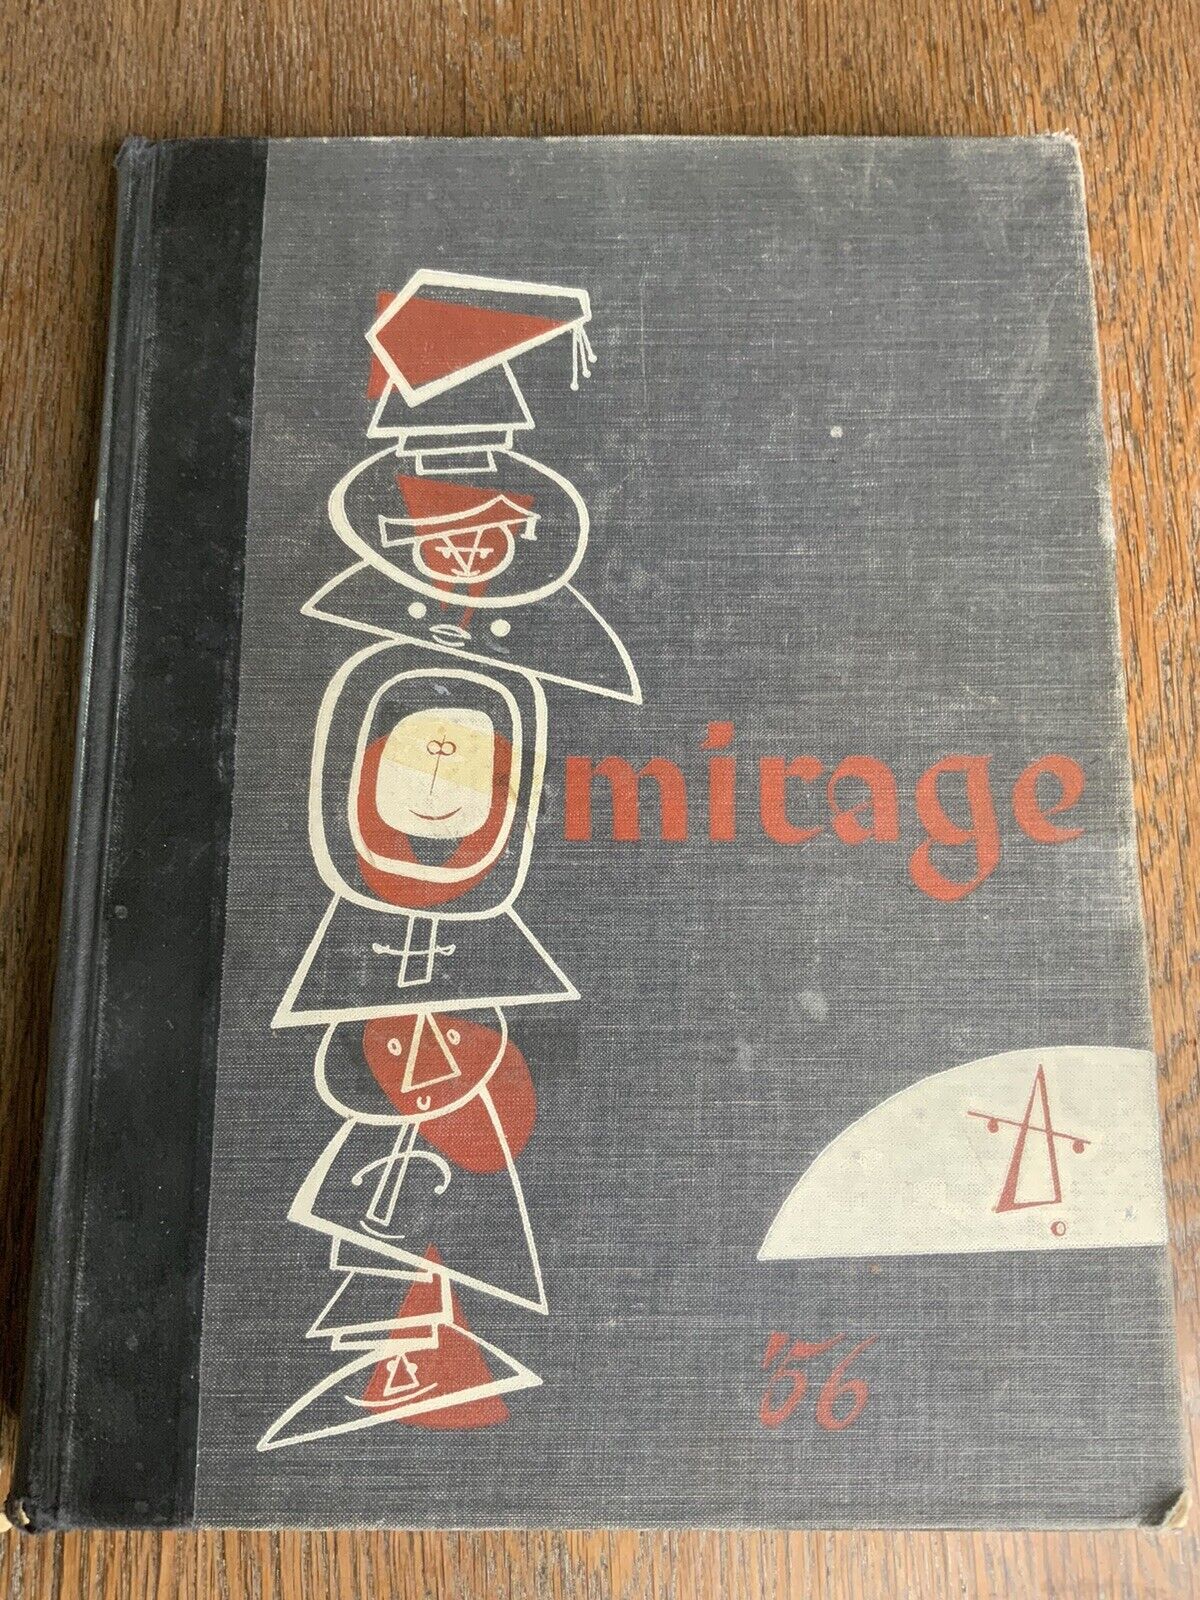 UNM University New Mexico Mirage 1956 Yearbook Vintage